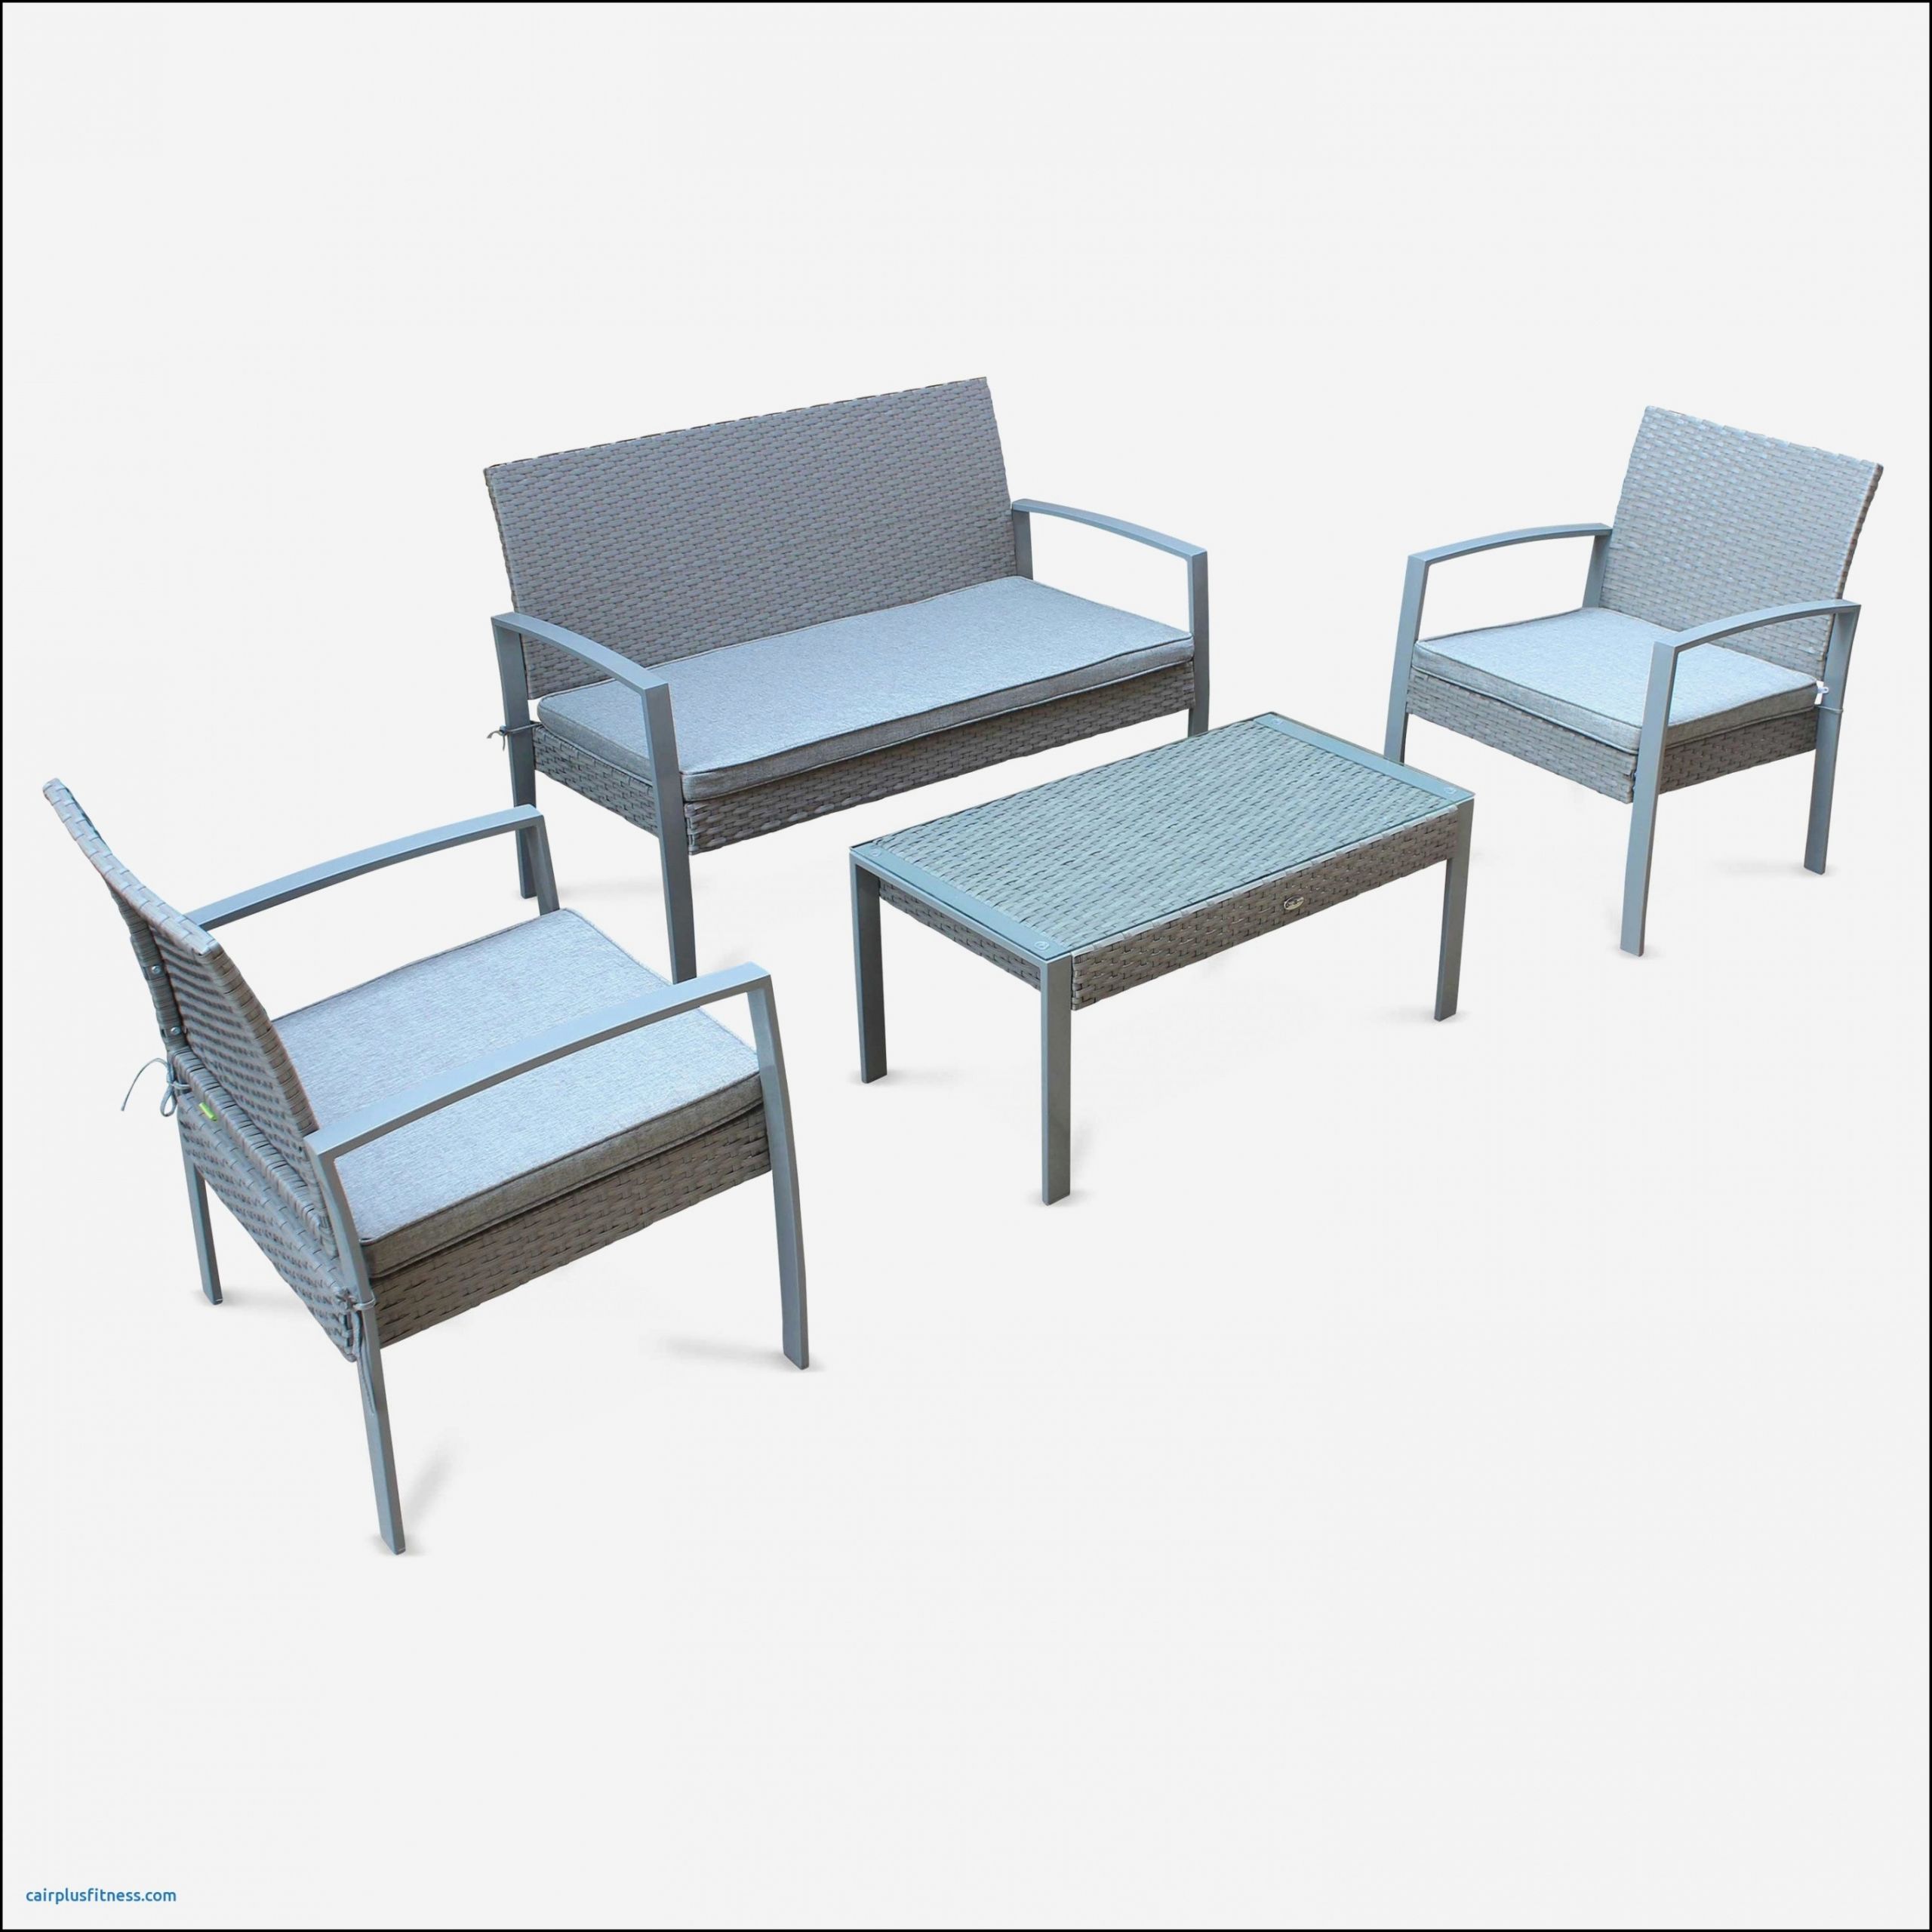 table de jardin avec chaise pas cher fauteuil rond jardin laguerredesmots of table de jardin avec chaise pas cher